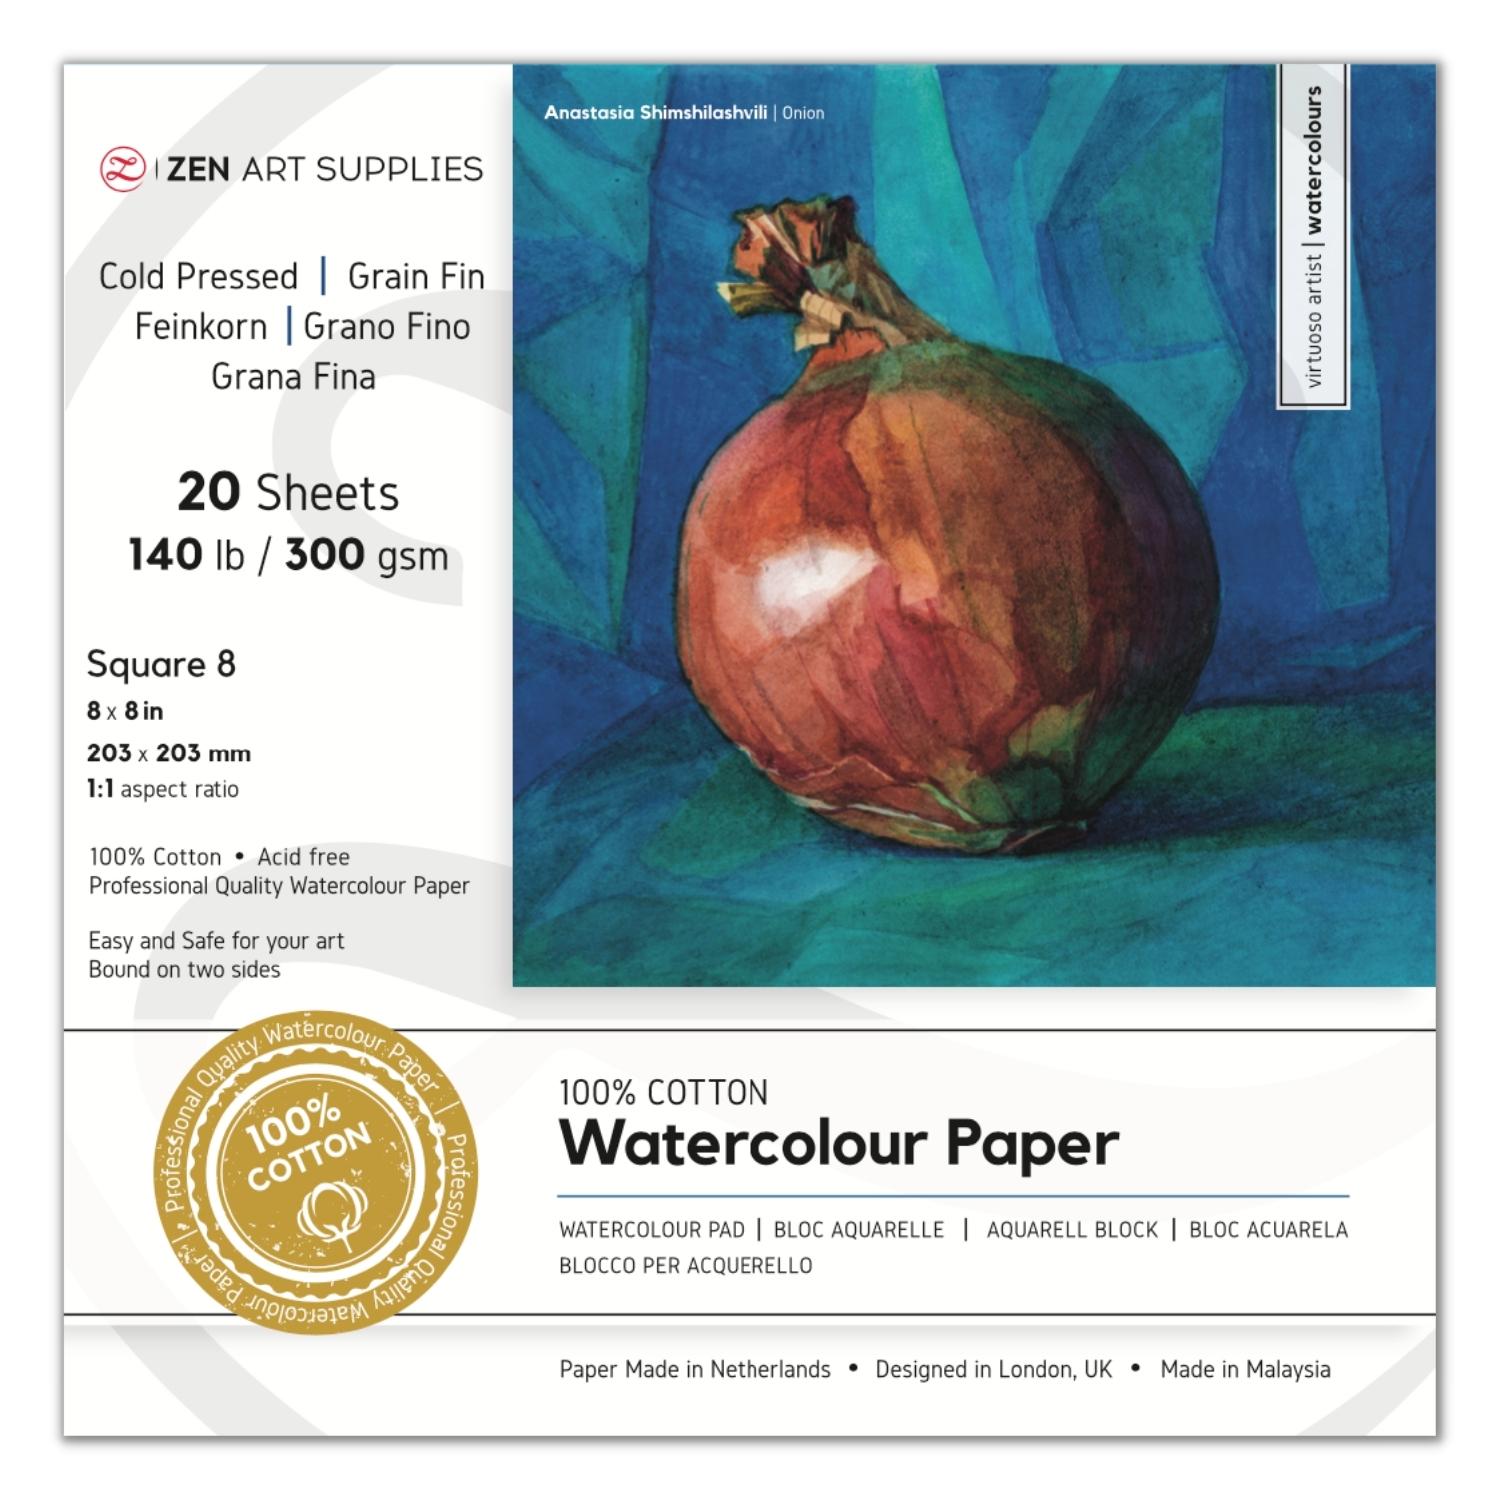  120 Sheets Watercolor Paper Bulk, 140 lb/300 GSM Cold